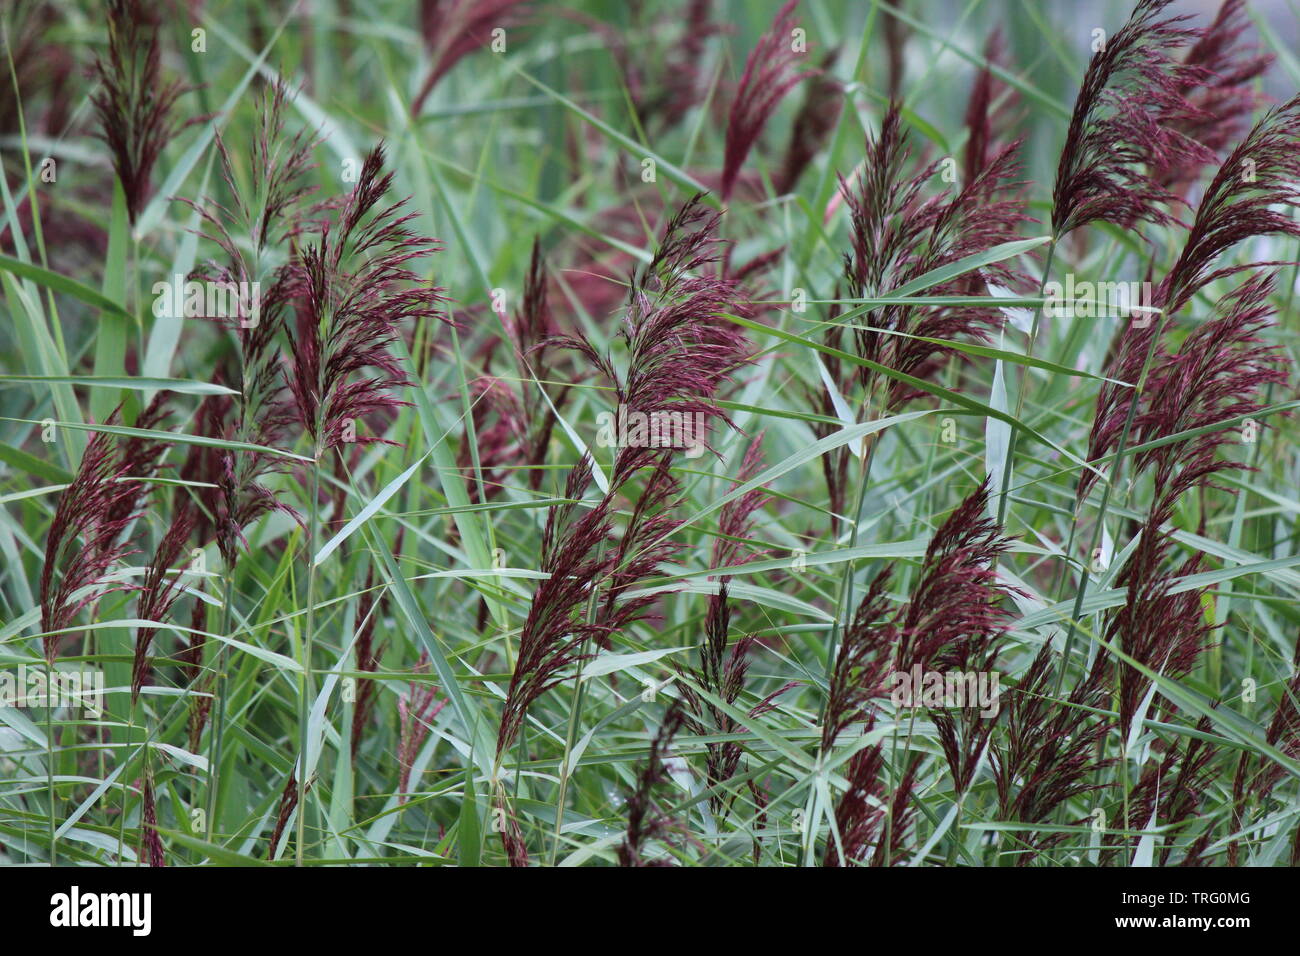 Phalaris canary reed grass Stock Photo